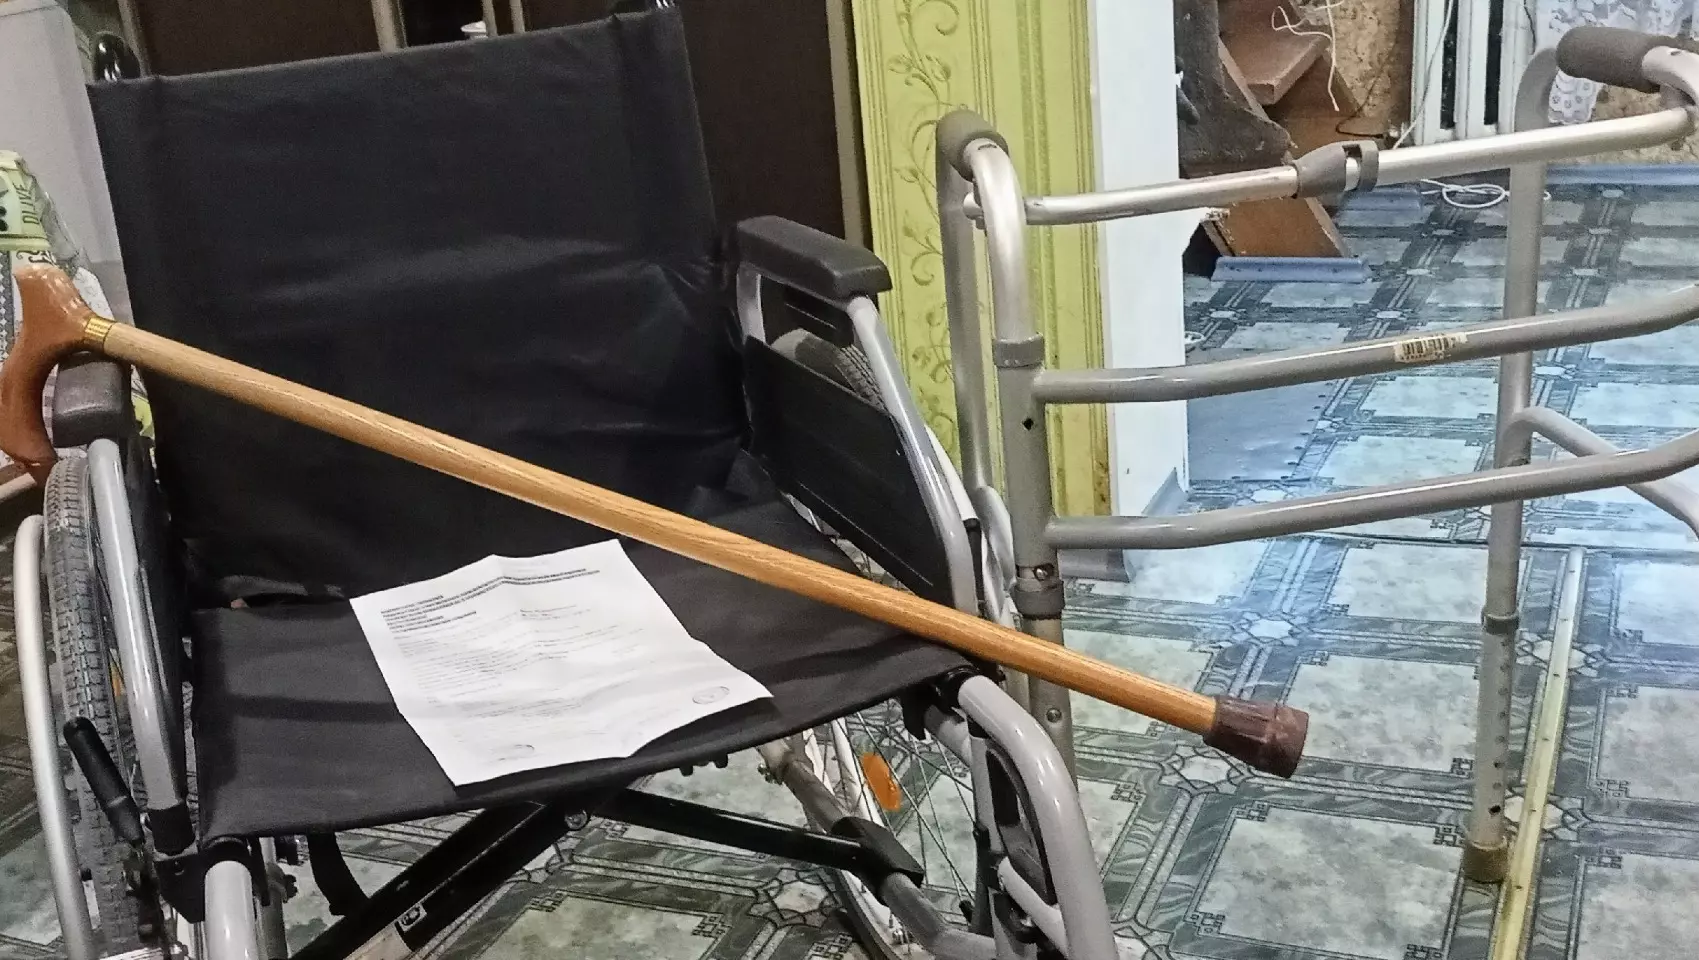 «Сын-инвалид и я — на коляске»: семья в Ижевске пострадала от халатной уборки снега